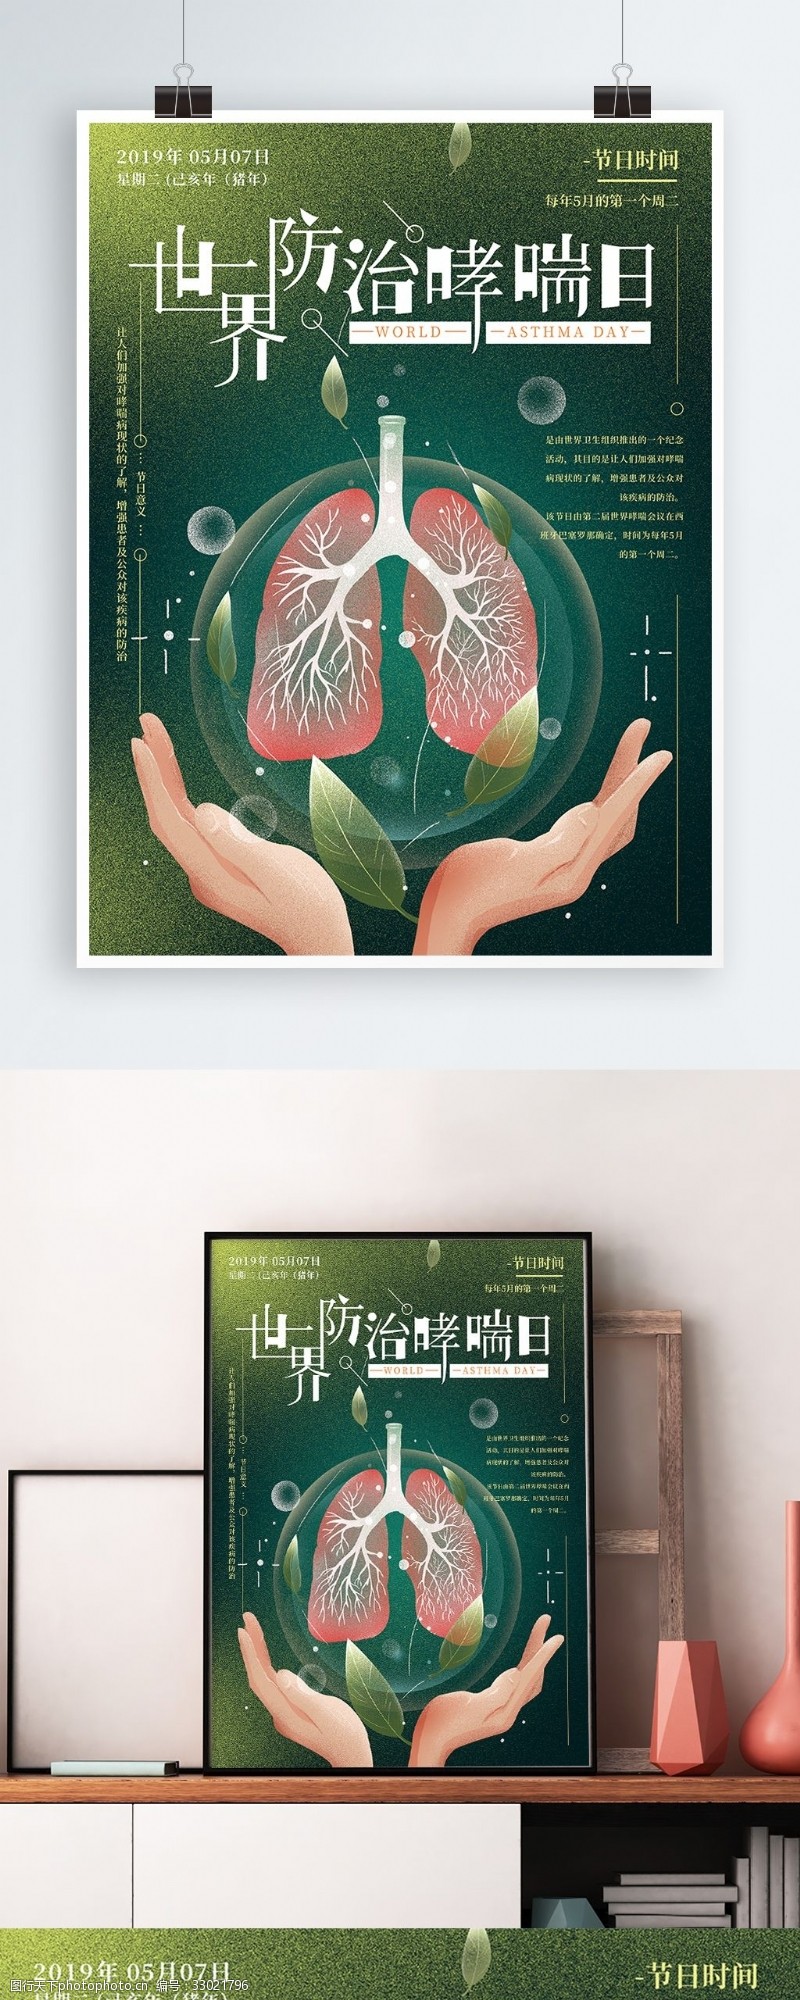 防治日原创手绘世界防治哮喘日海报